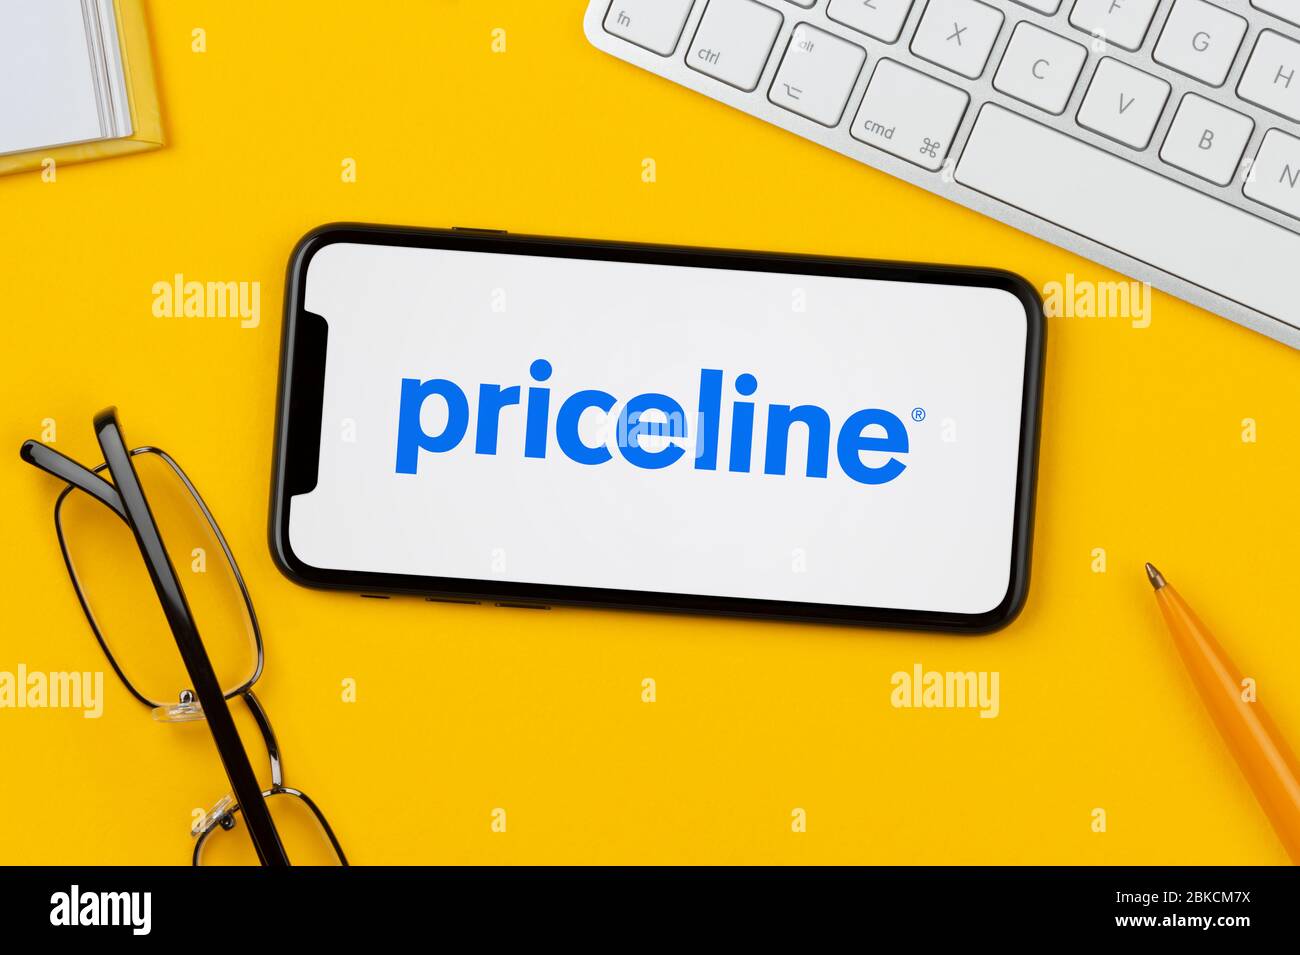 Un smartphone que muestra el logotipo de Priceline se apoya sobre un fondo amarillo junto con un teclado, gafas, lápiz y libro (sólo para uso editorial). Foto de stock